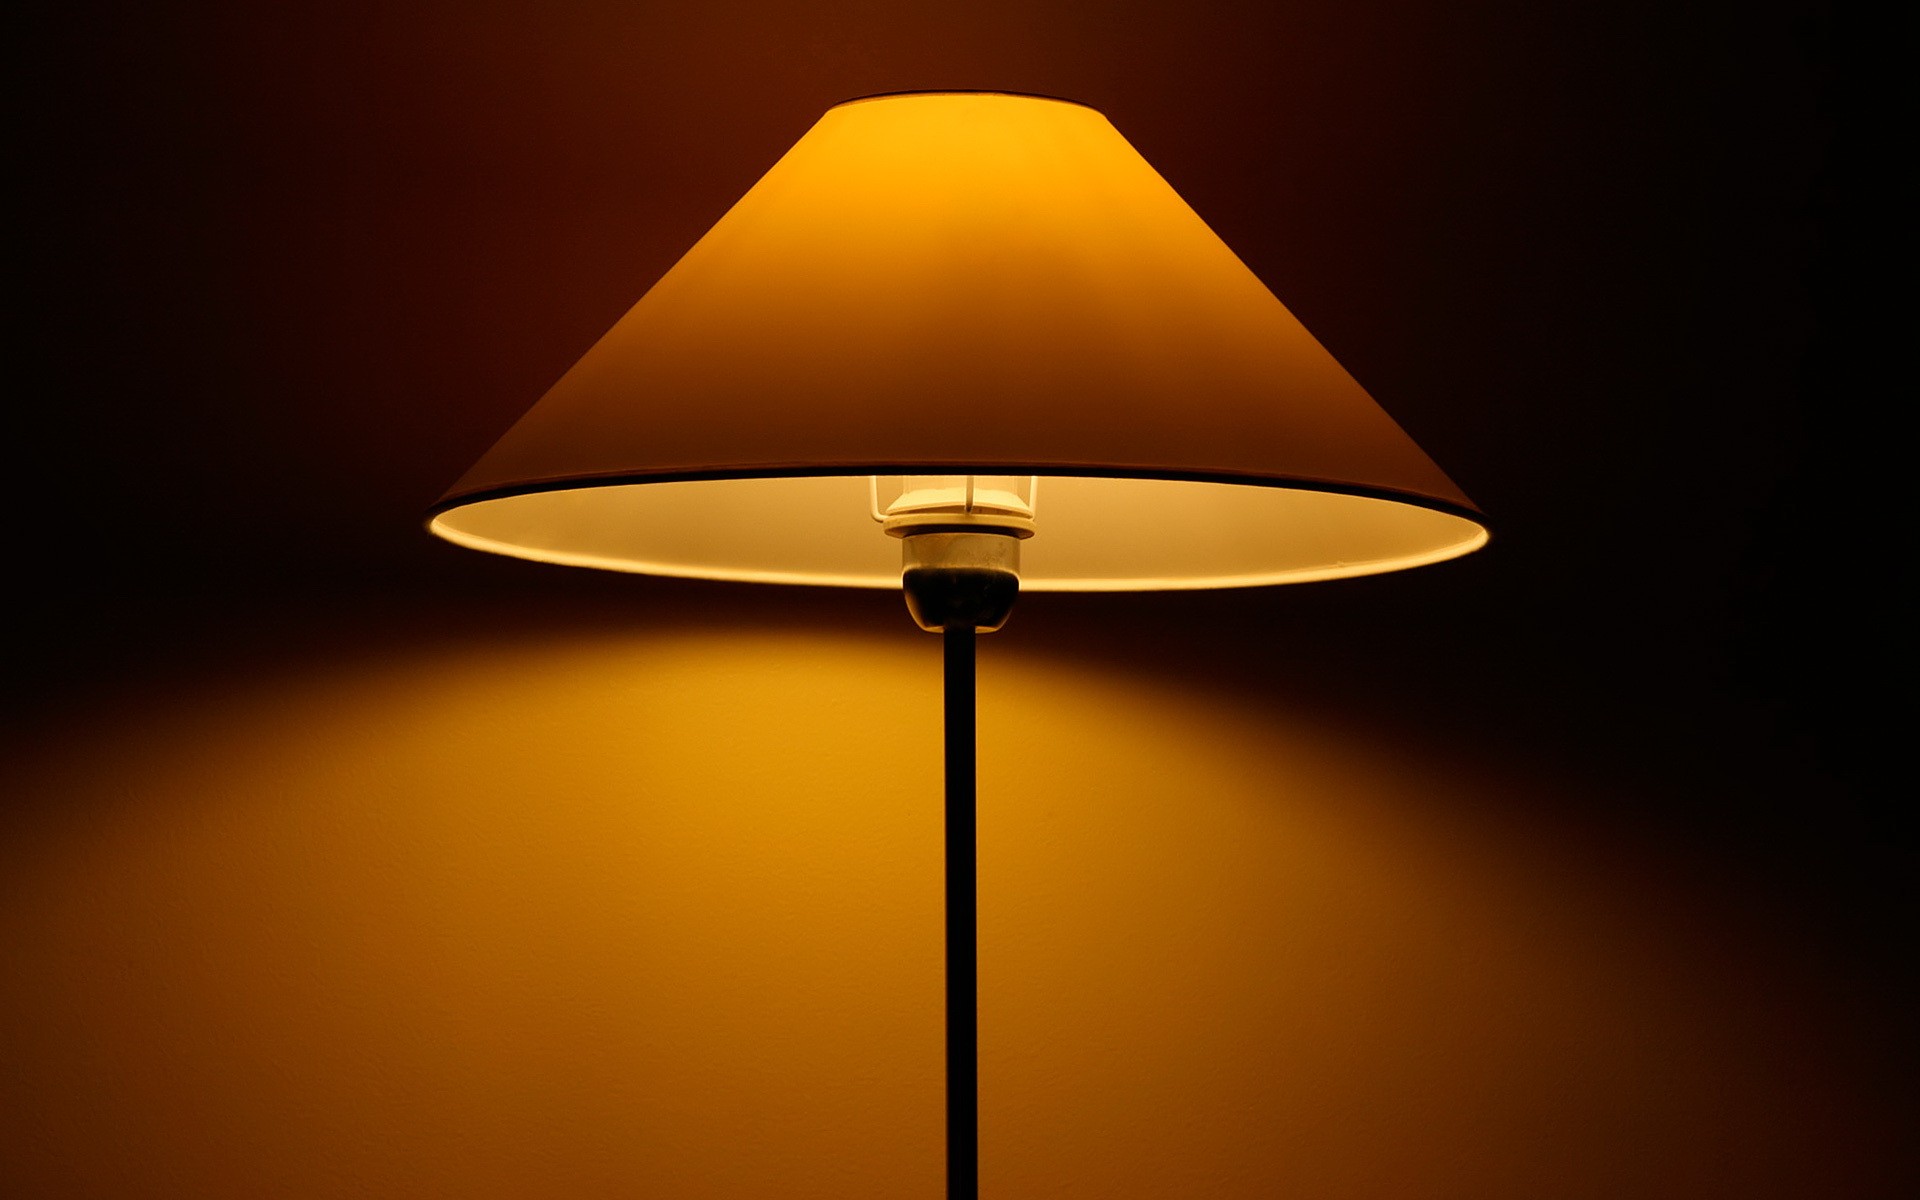 General 1920x1200 lamp dark simple background brown indoors